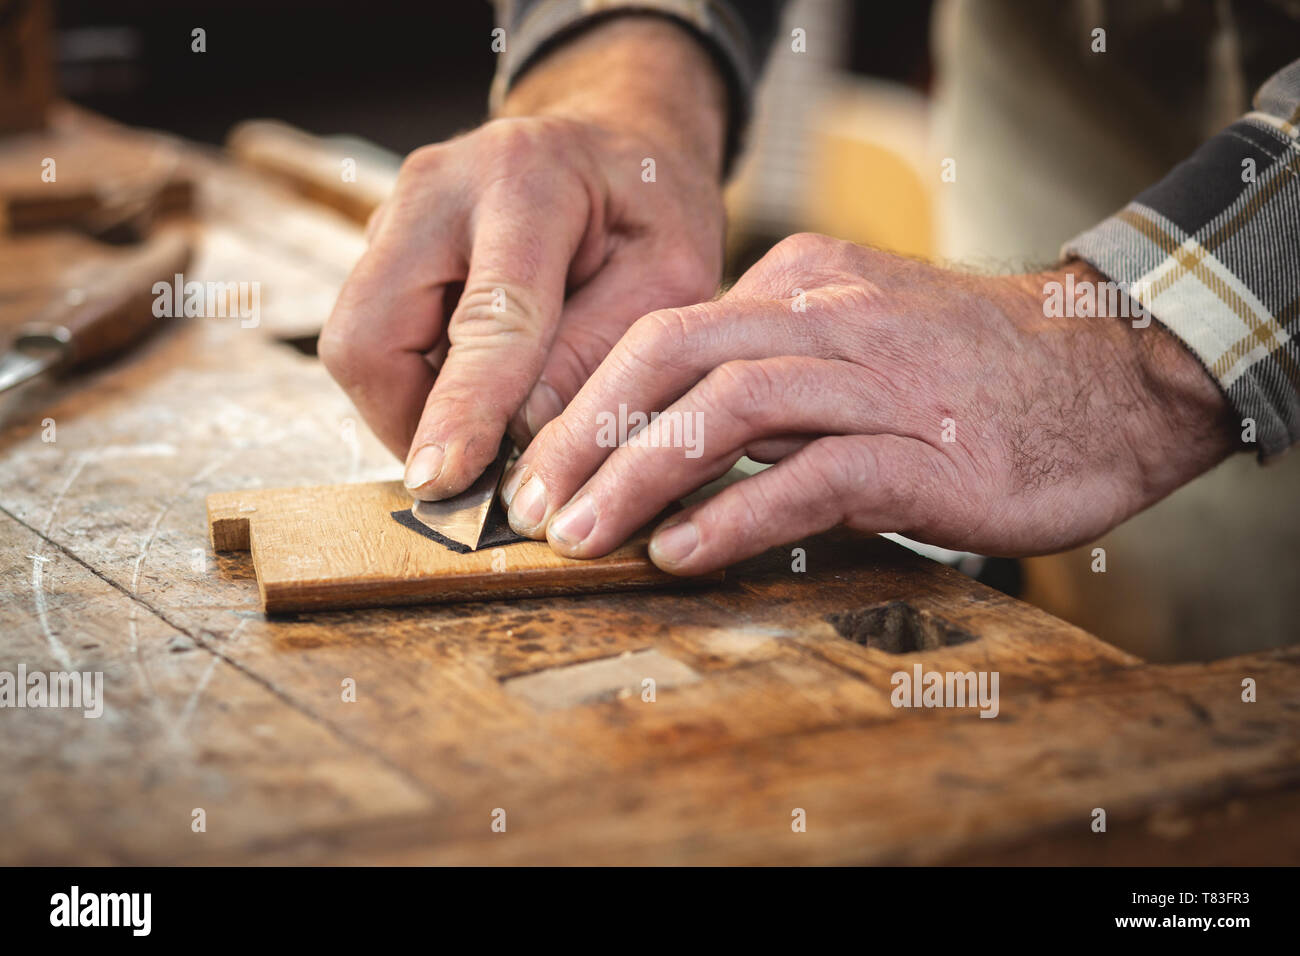 Die Hände eines Handwerkers schneiden ein kleines Stück Leder Stockfoto